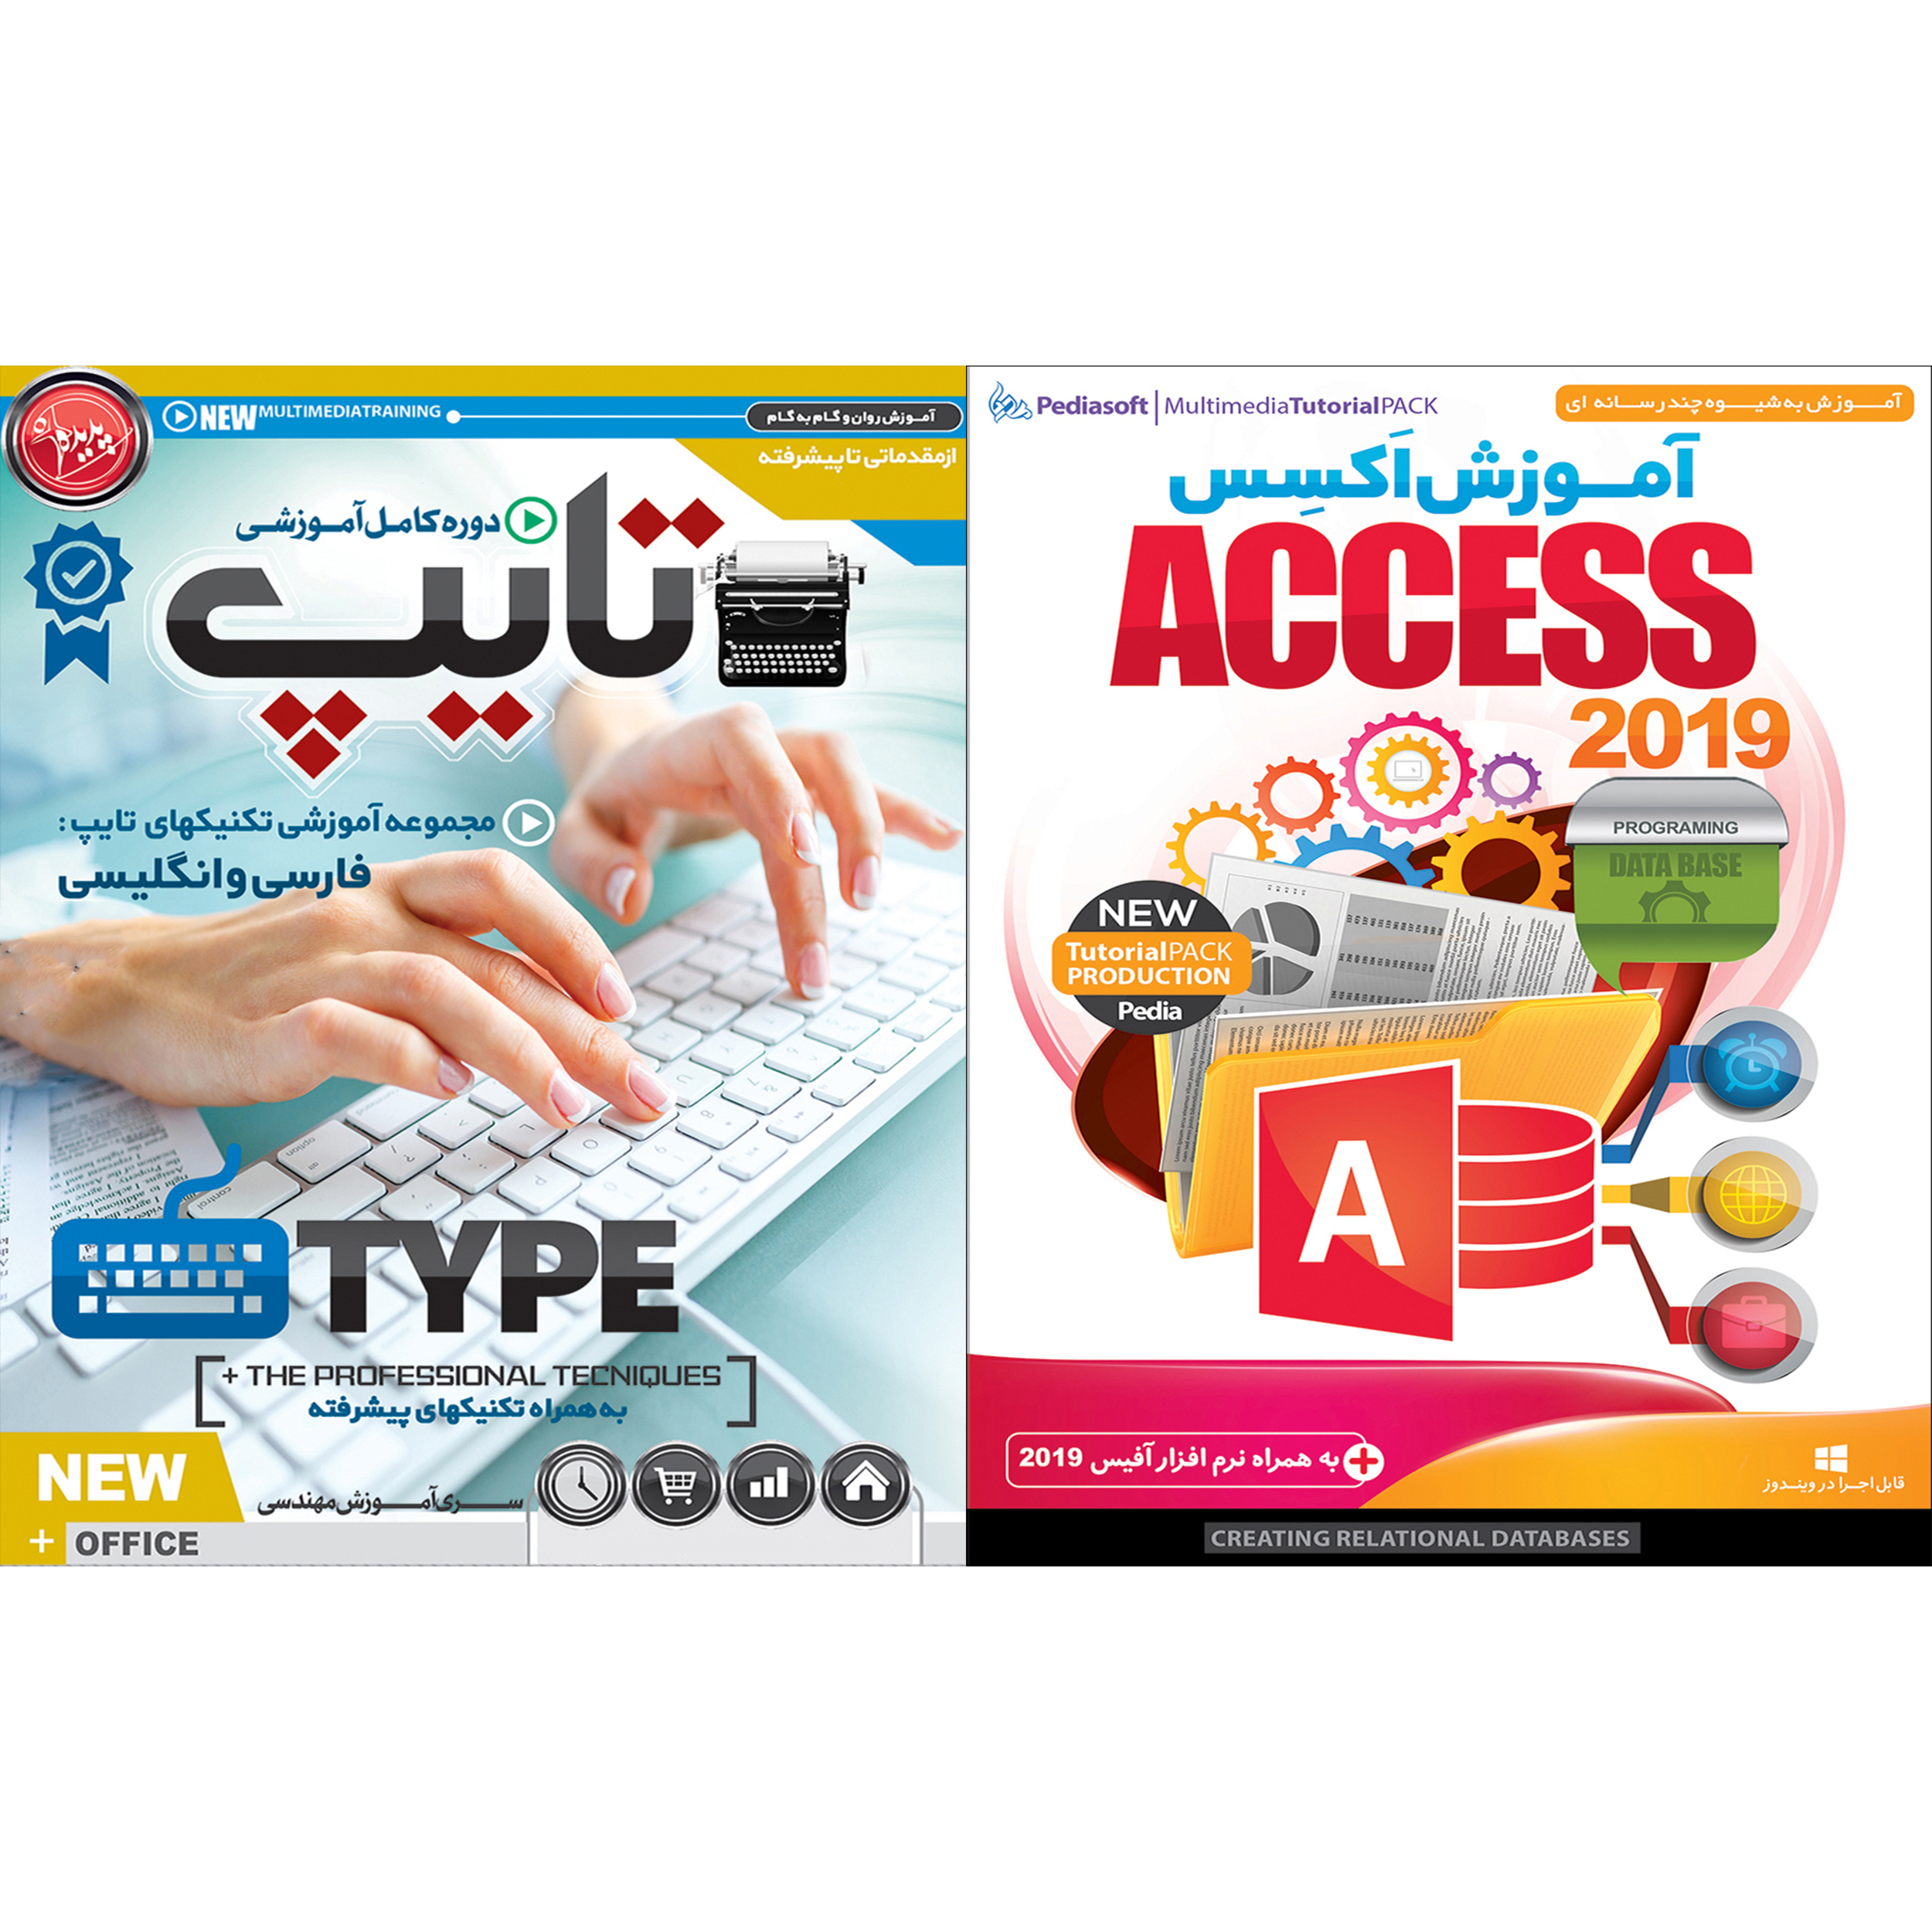 نرم افزار آموزش اکسس Access 2019 نشر پدیا سافت به همراه نرم افزار آموزش تایپ نشر پدیده